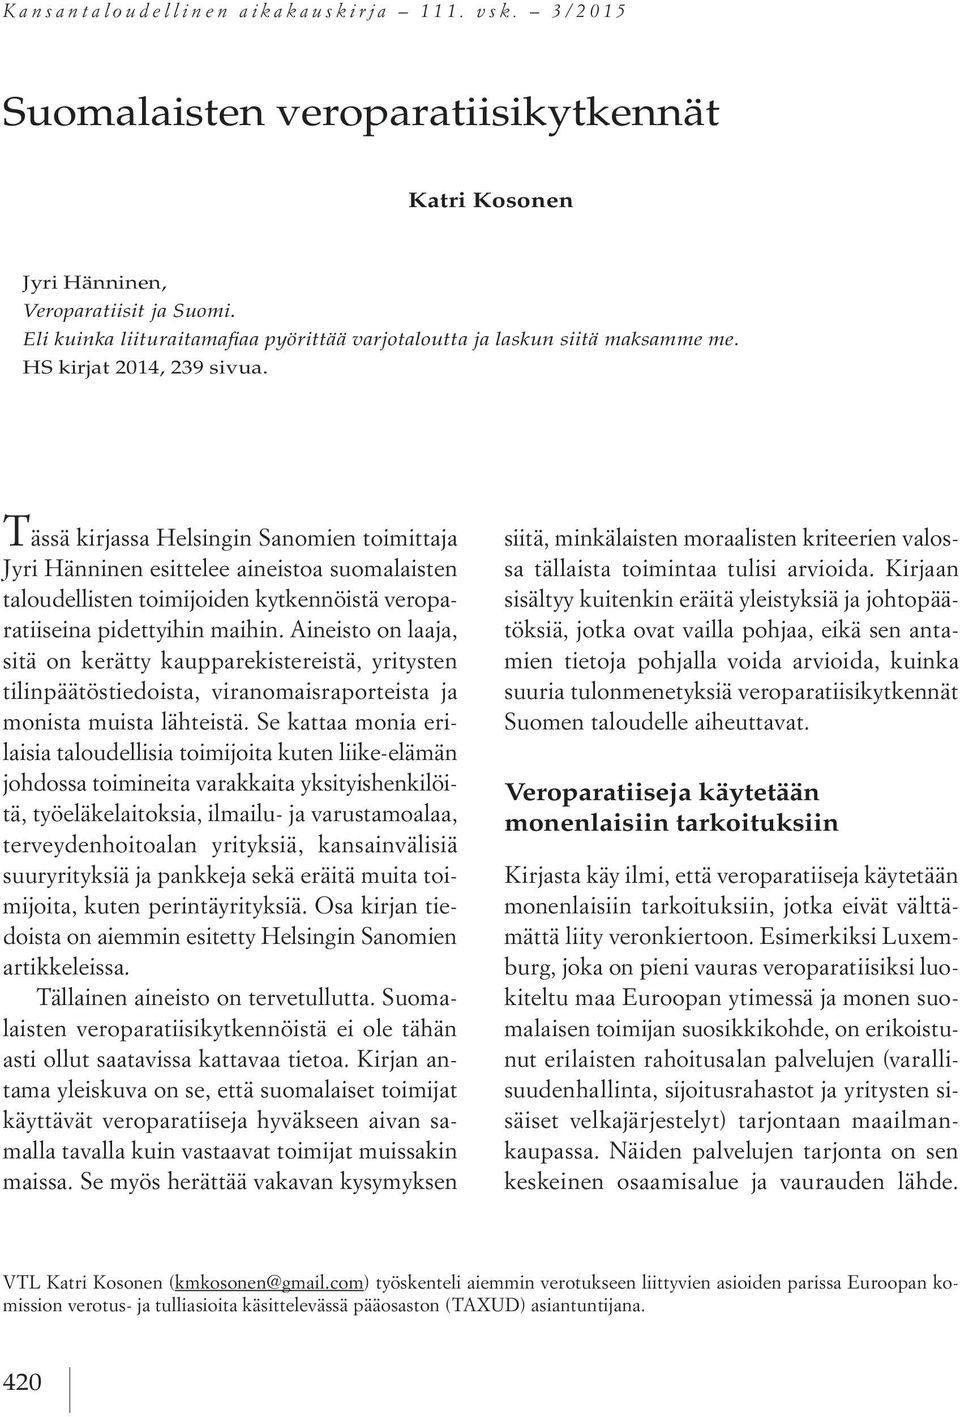 Tässä kirjassa Helsingin Sanomien toimittaja Jyri Hänninen esittelee aineistoa suomalaisten taloudellisten toimijoiden kytkennöistä veroparatiiseina pidettyihin maihin.